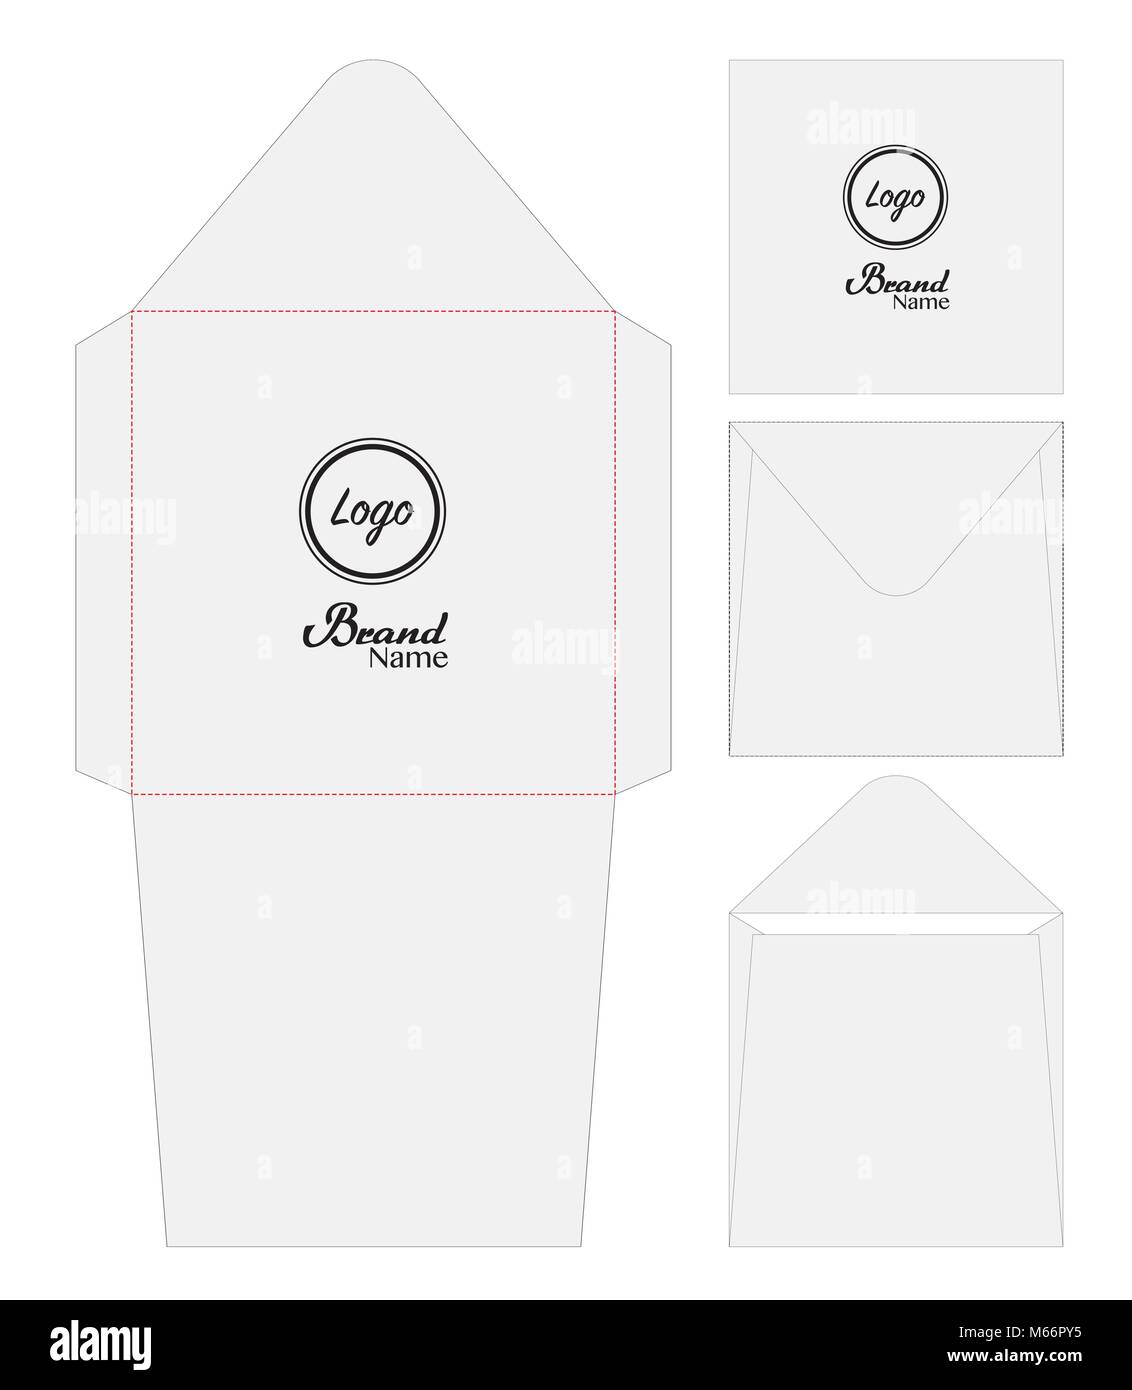 Photo de Prototype De Mini Enveloppe Simple Et Exquis, note de maquette,  maquette d enveloppes, disposition des enveloppes Modèles images free  download - Lovepik